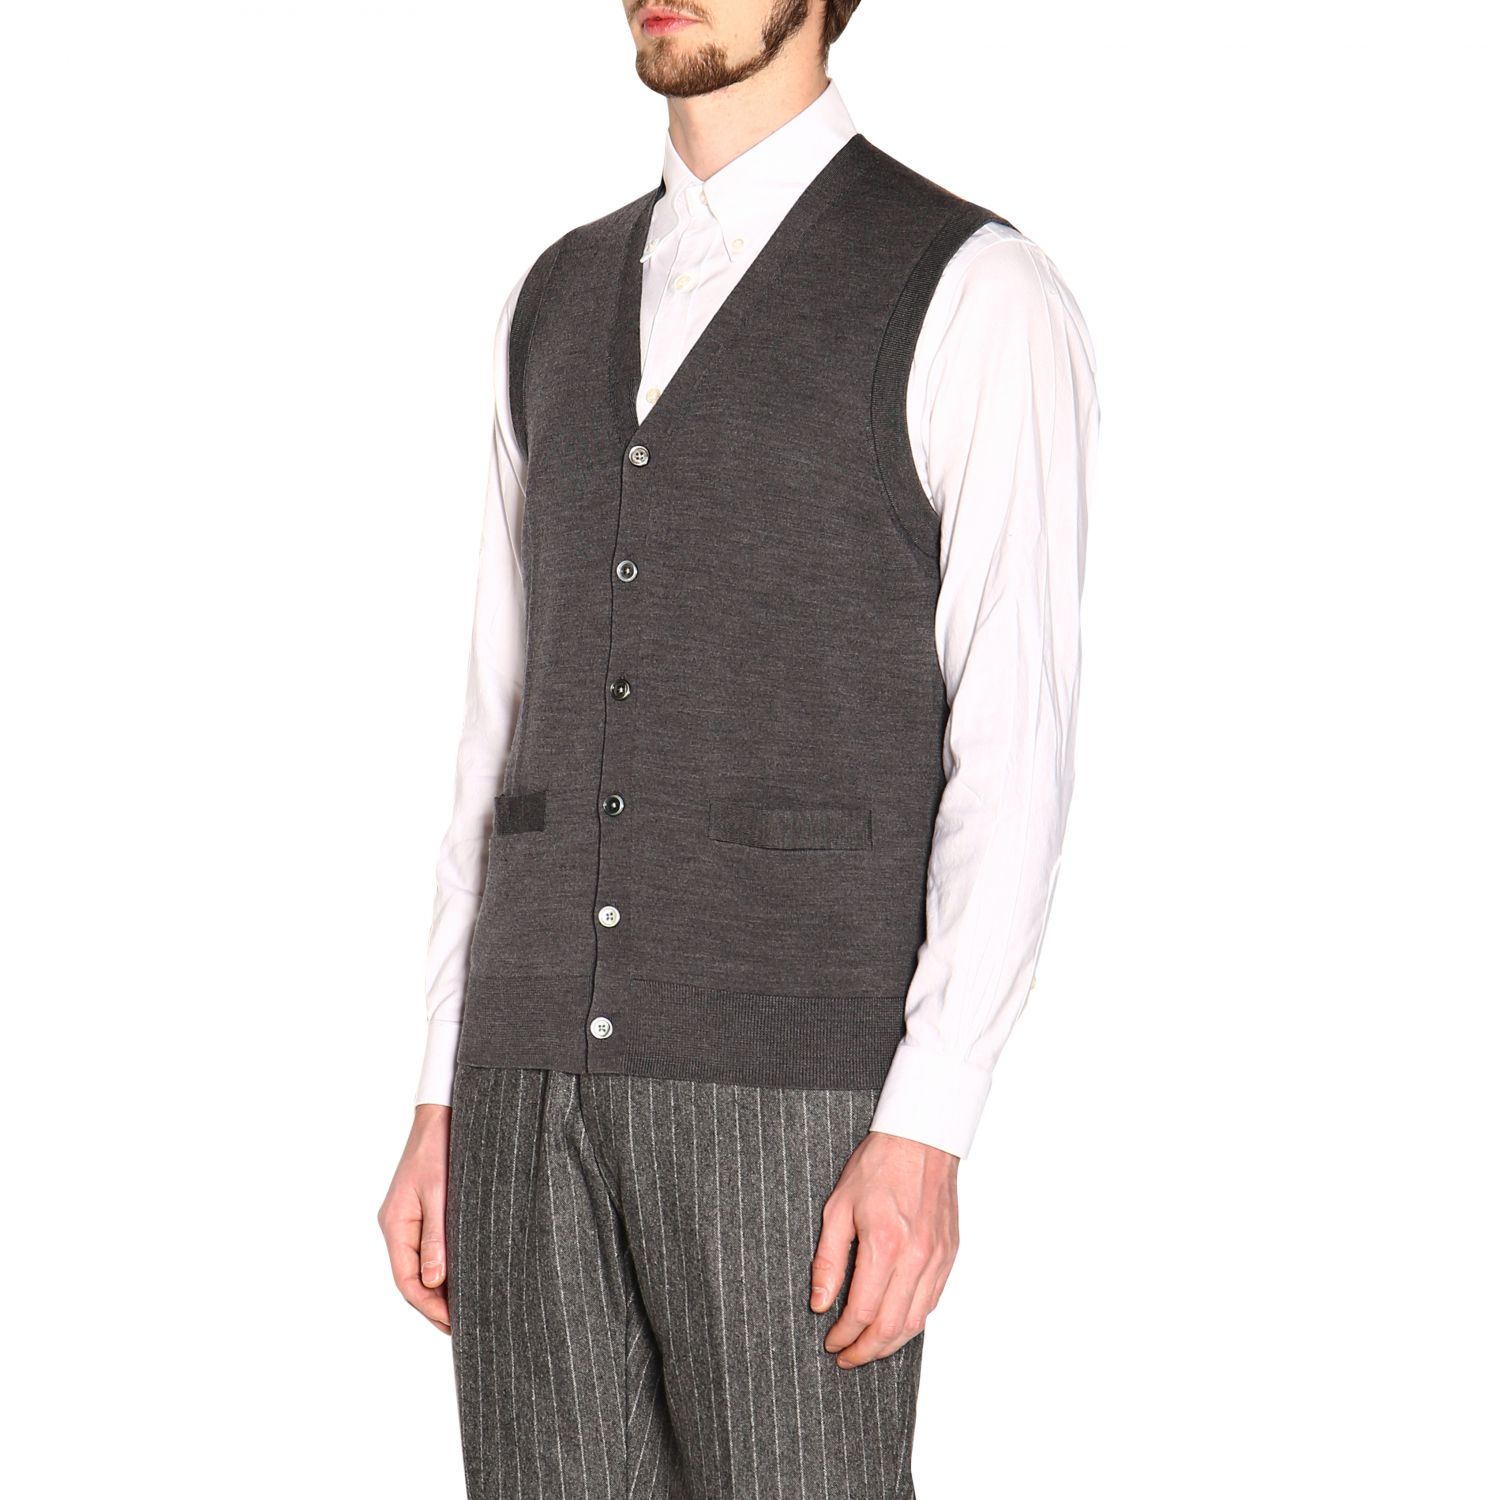 Brooks Brothers Outlet: Suit vest men | Suit Vest Brooks Brothers Men ...